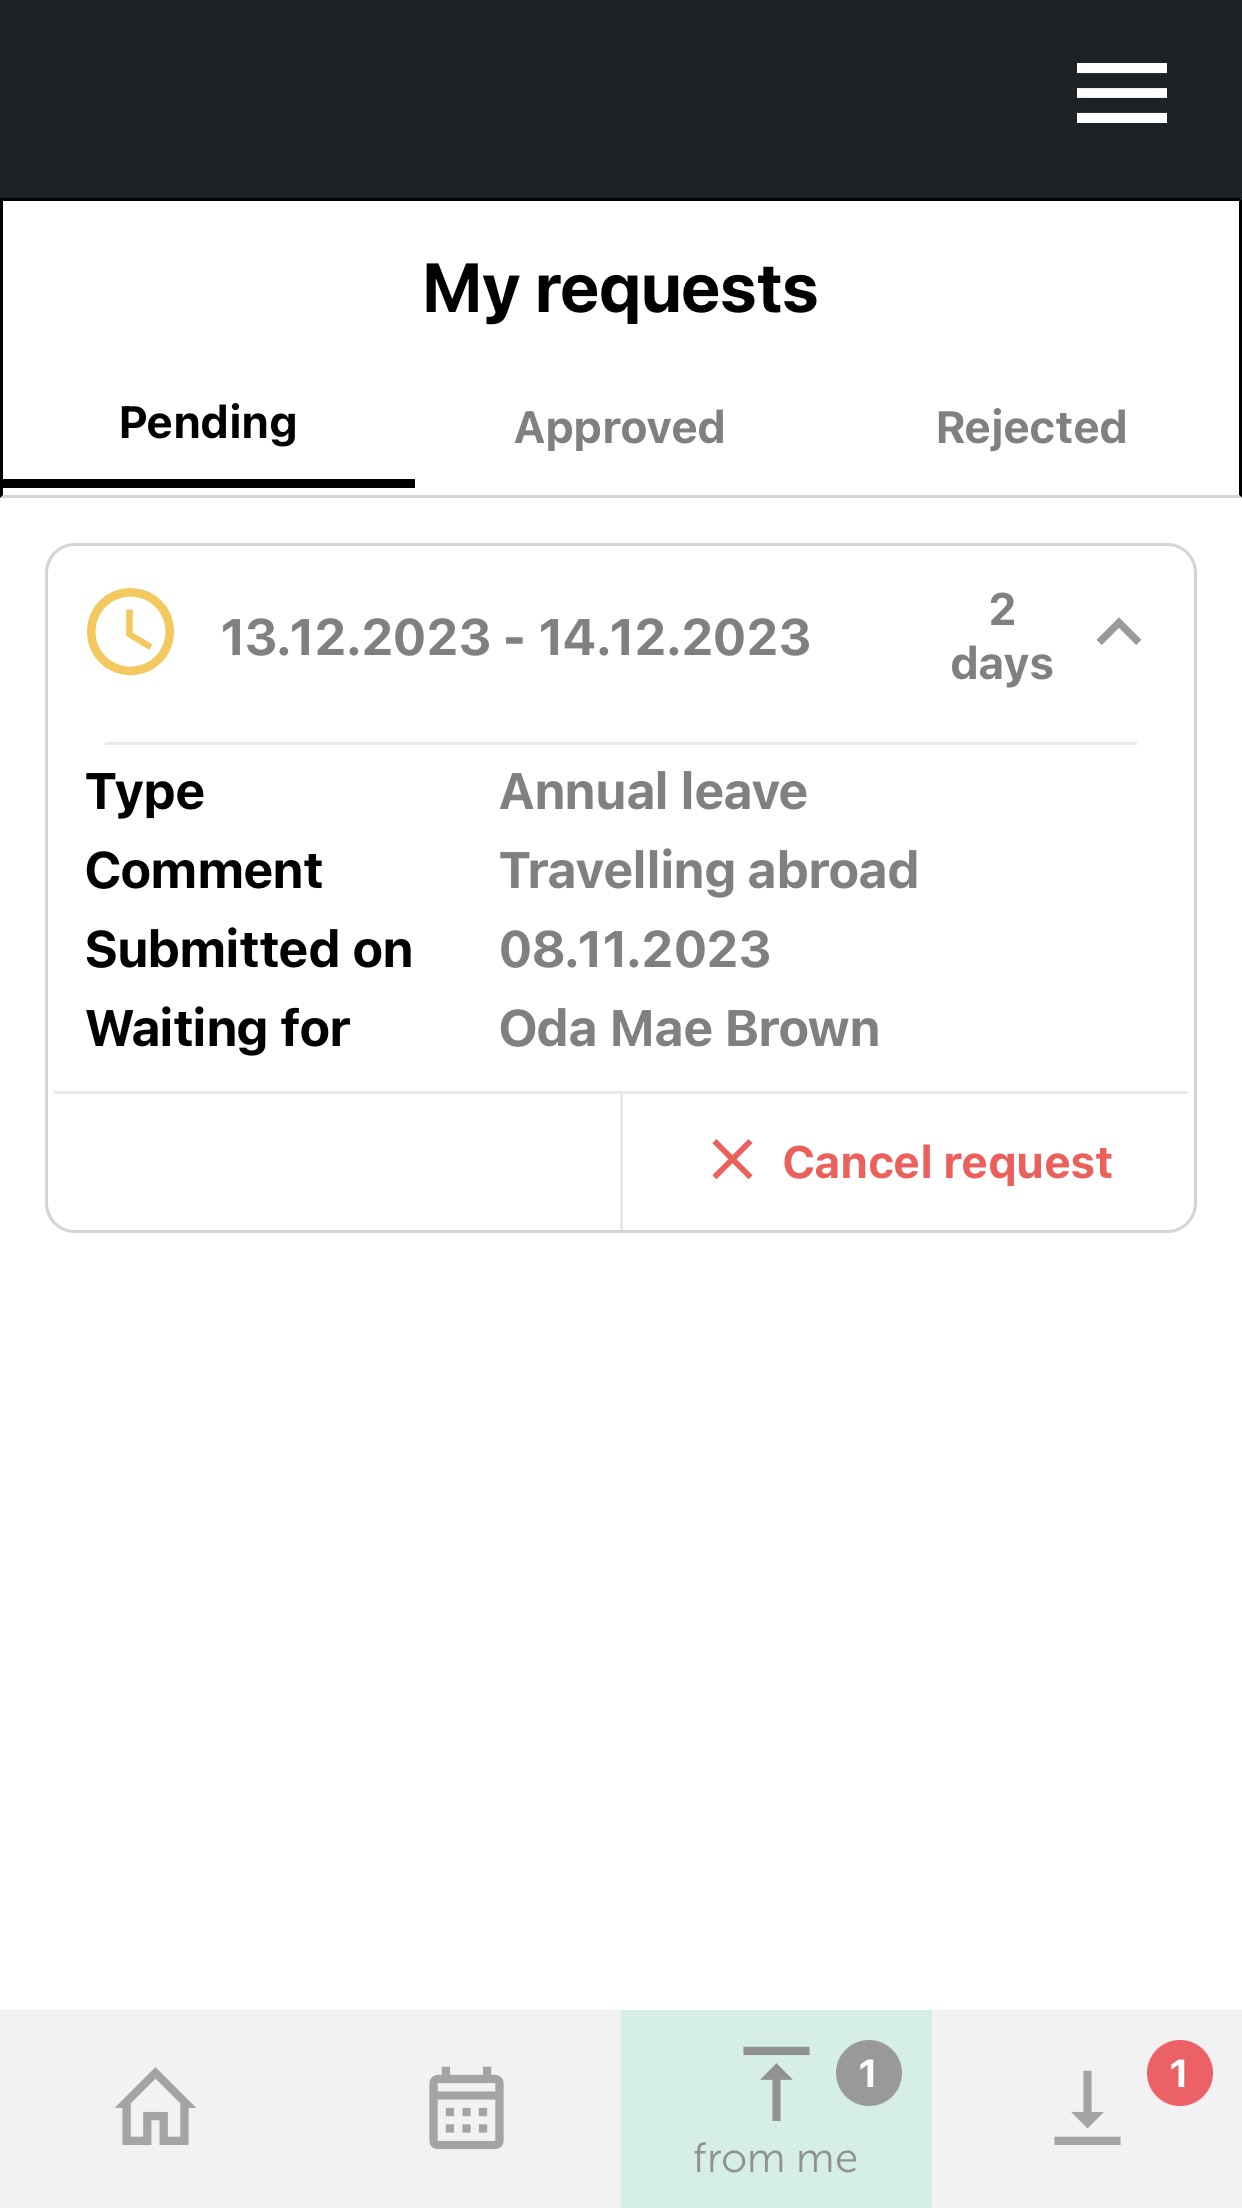 TIMEOFF.GURU - Mobile App My requests screen